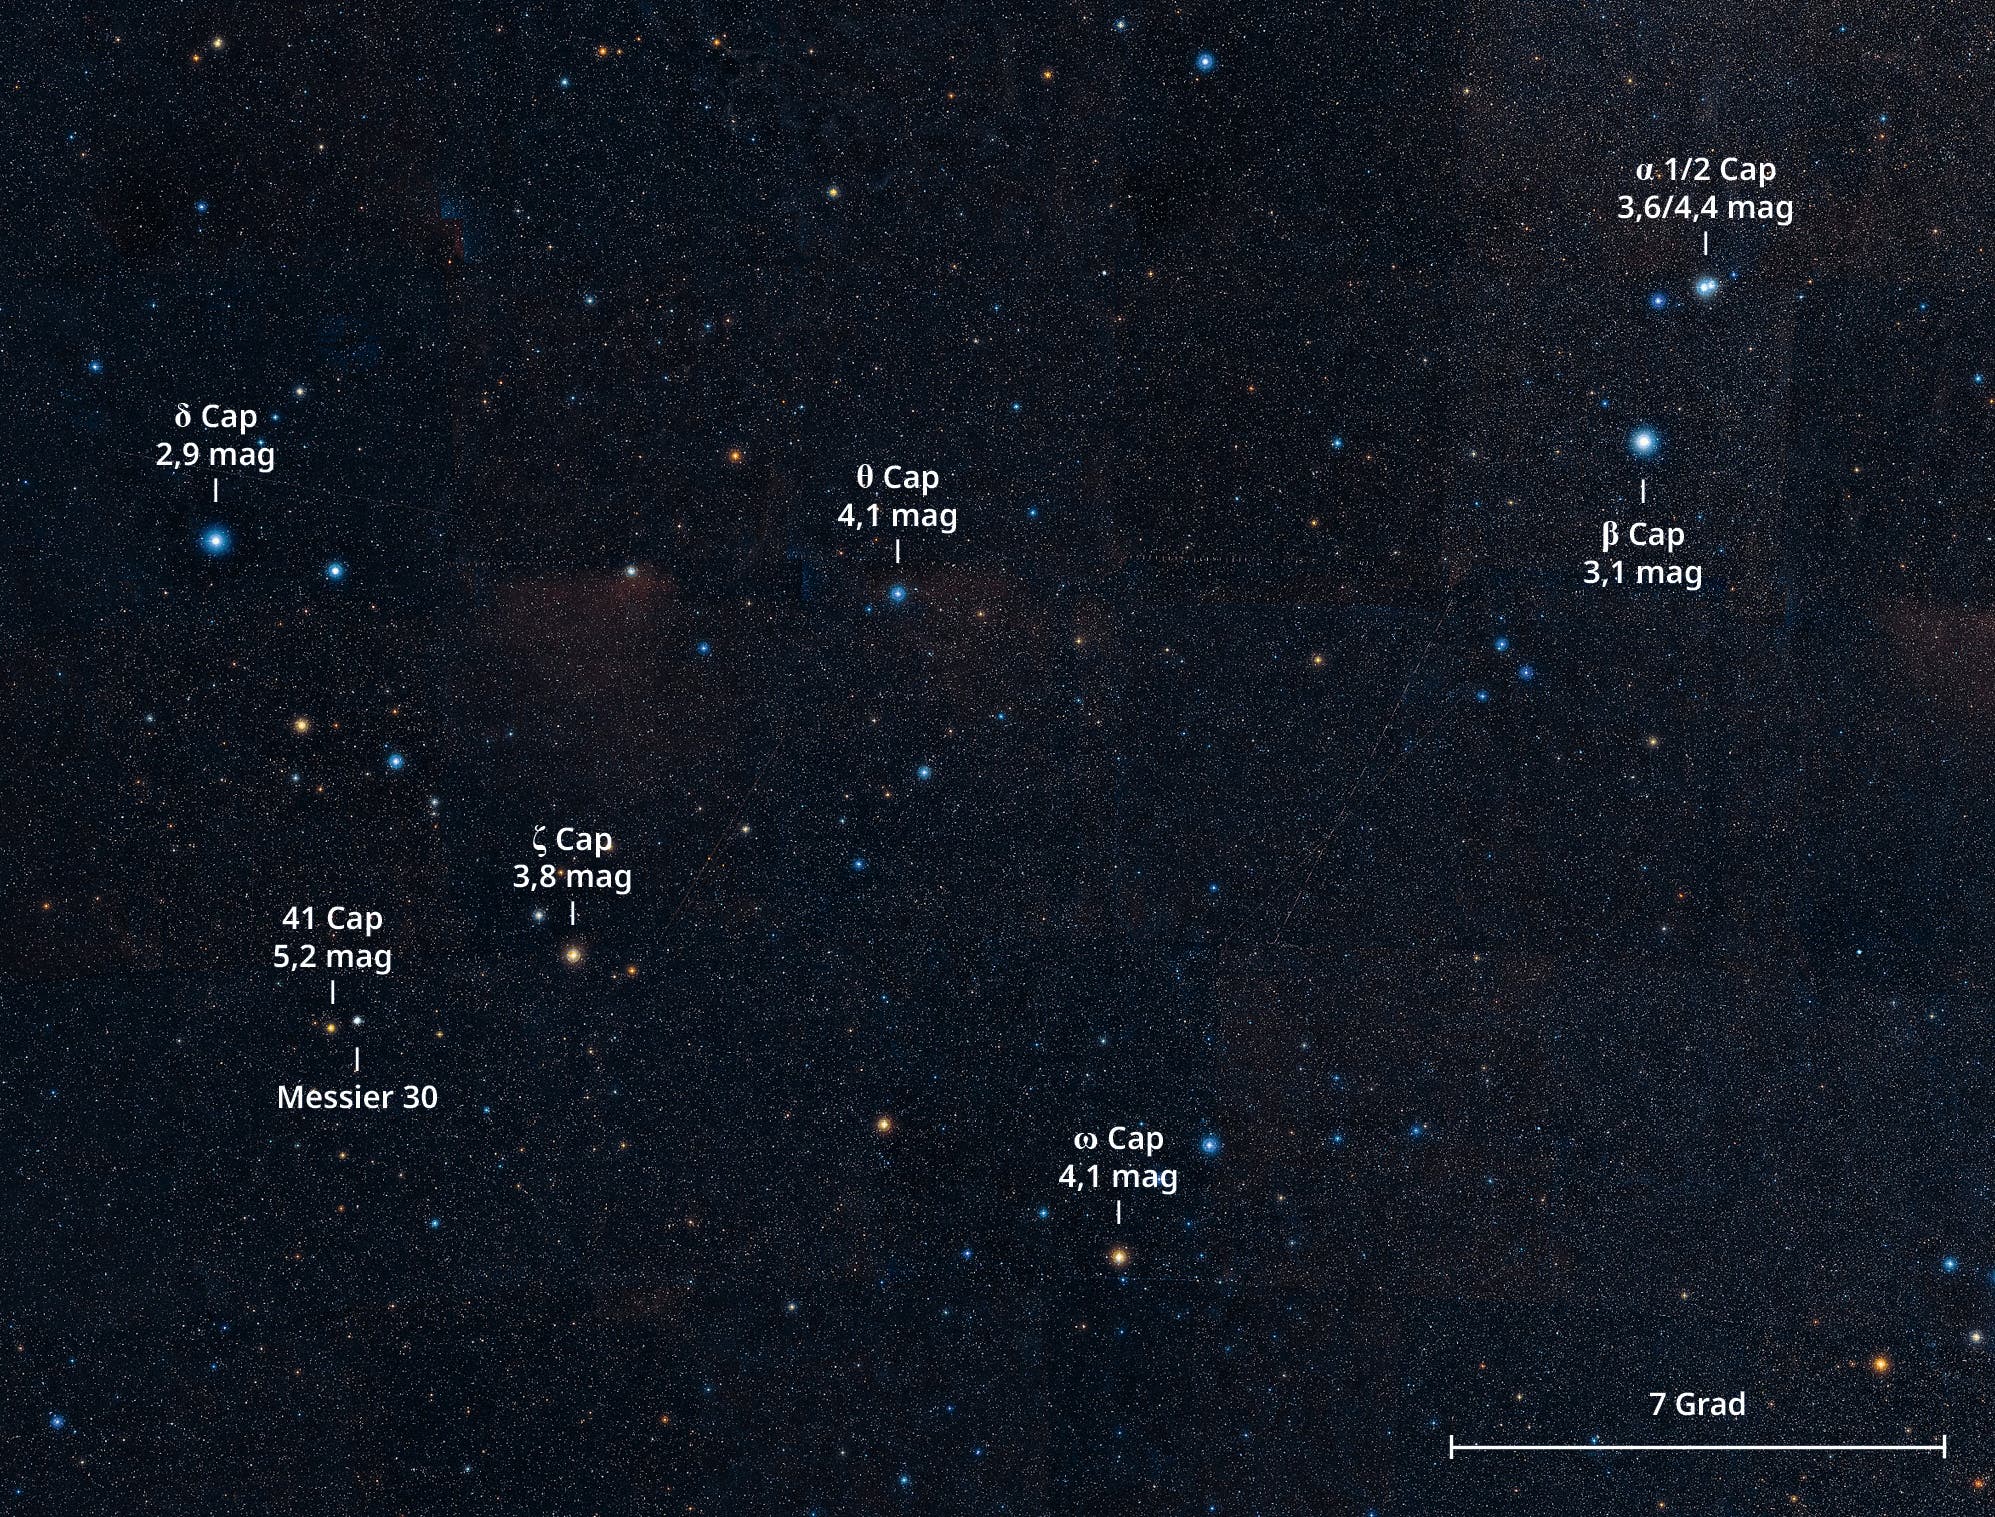 Himmelsausschnitt aus dem Sternbild Steinbock, in dem sich der Kugelsternhaufen Messier 30 befindet. 